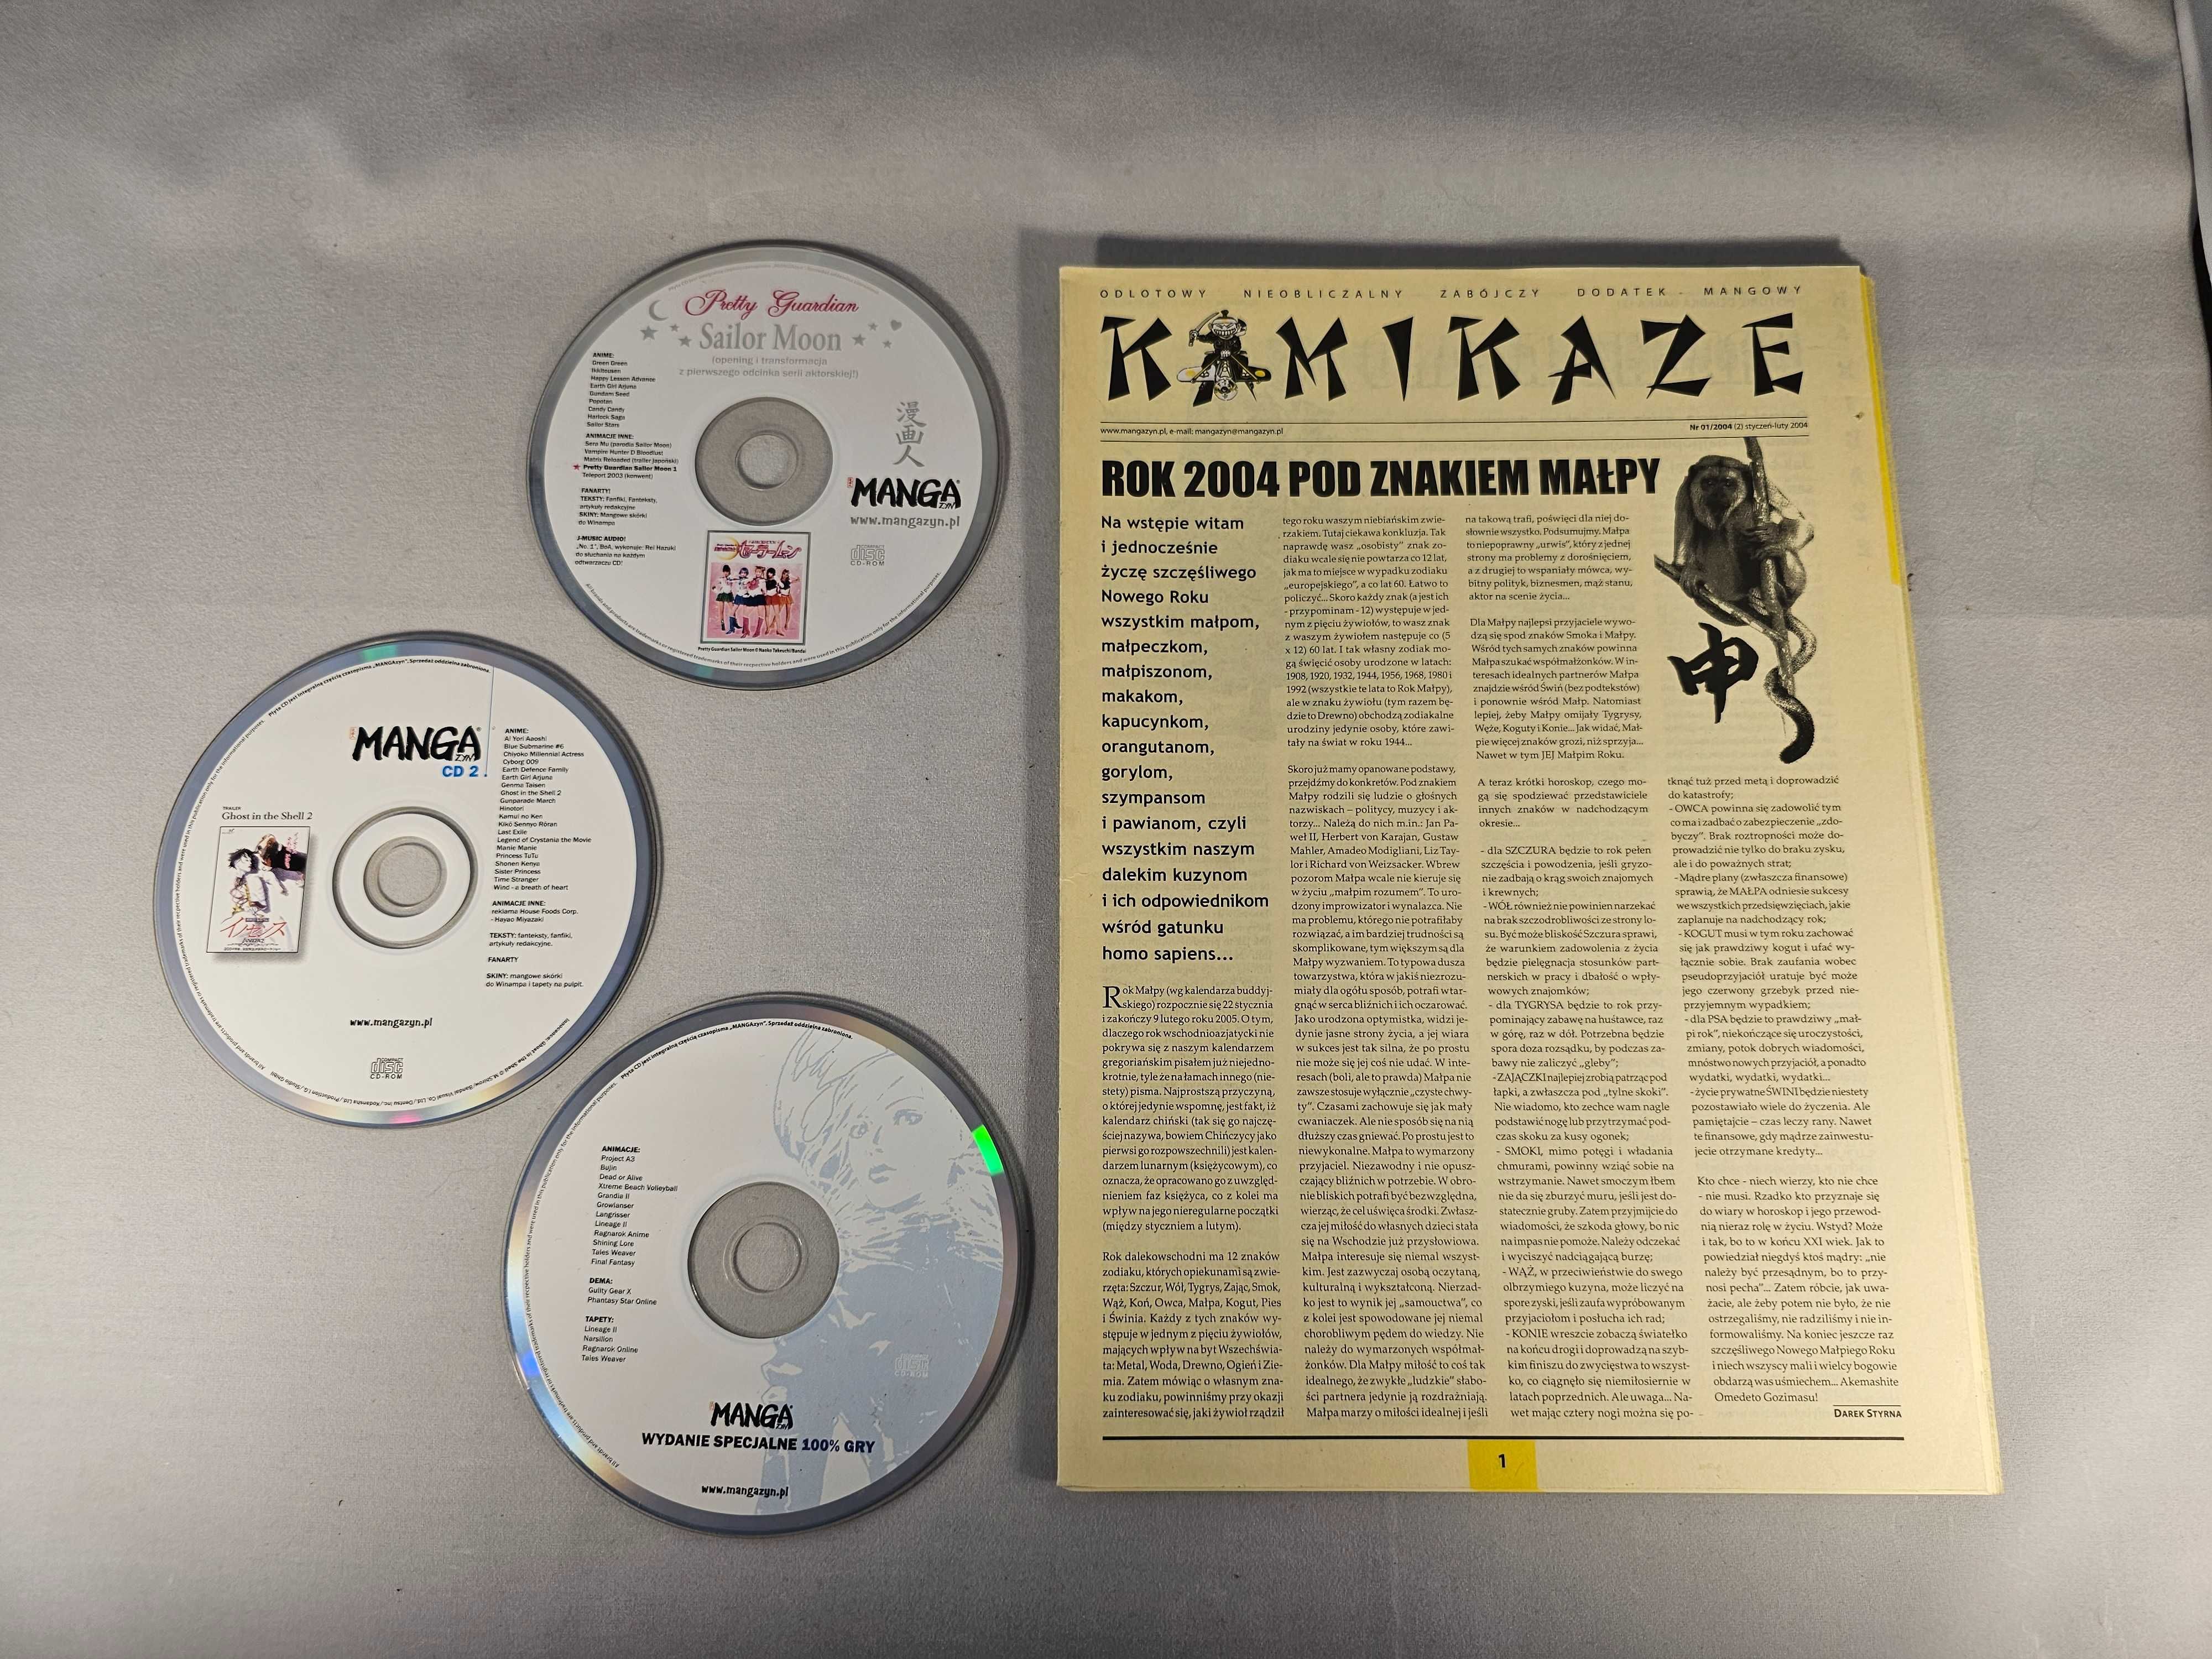 MANGAzyn #1 - #7 + wydanie specjalne #2 + 3 CD + Kamikaze - Unikat